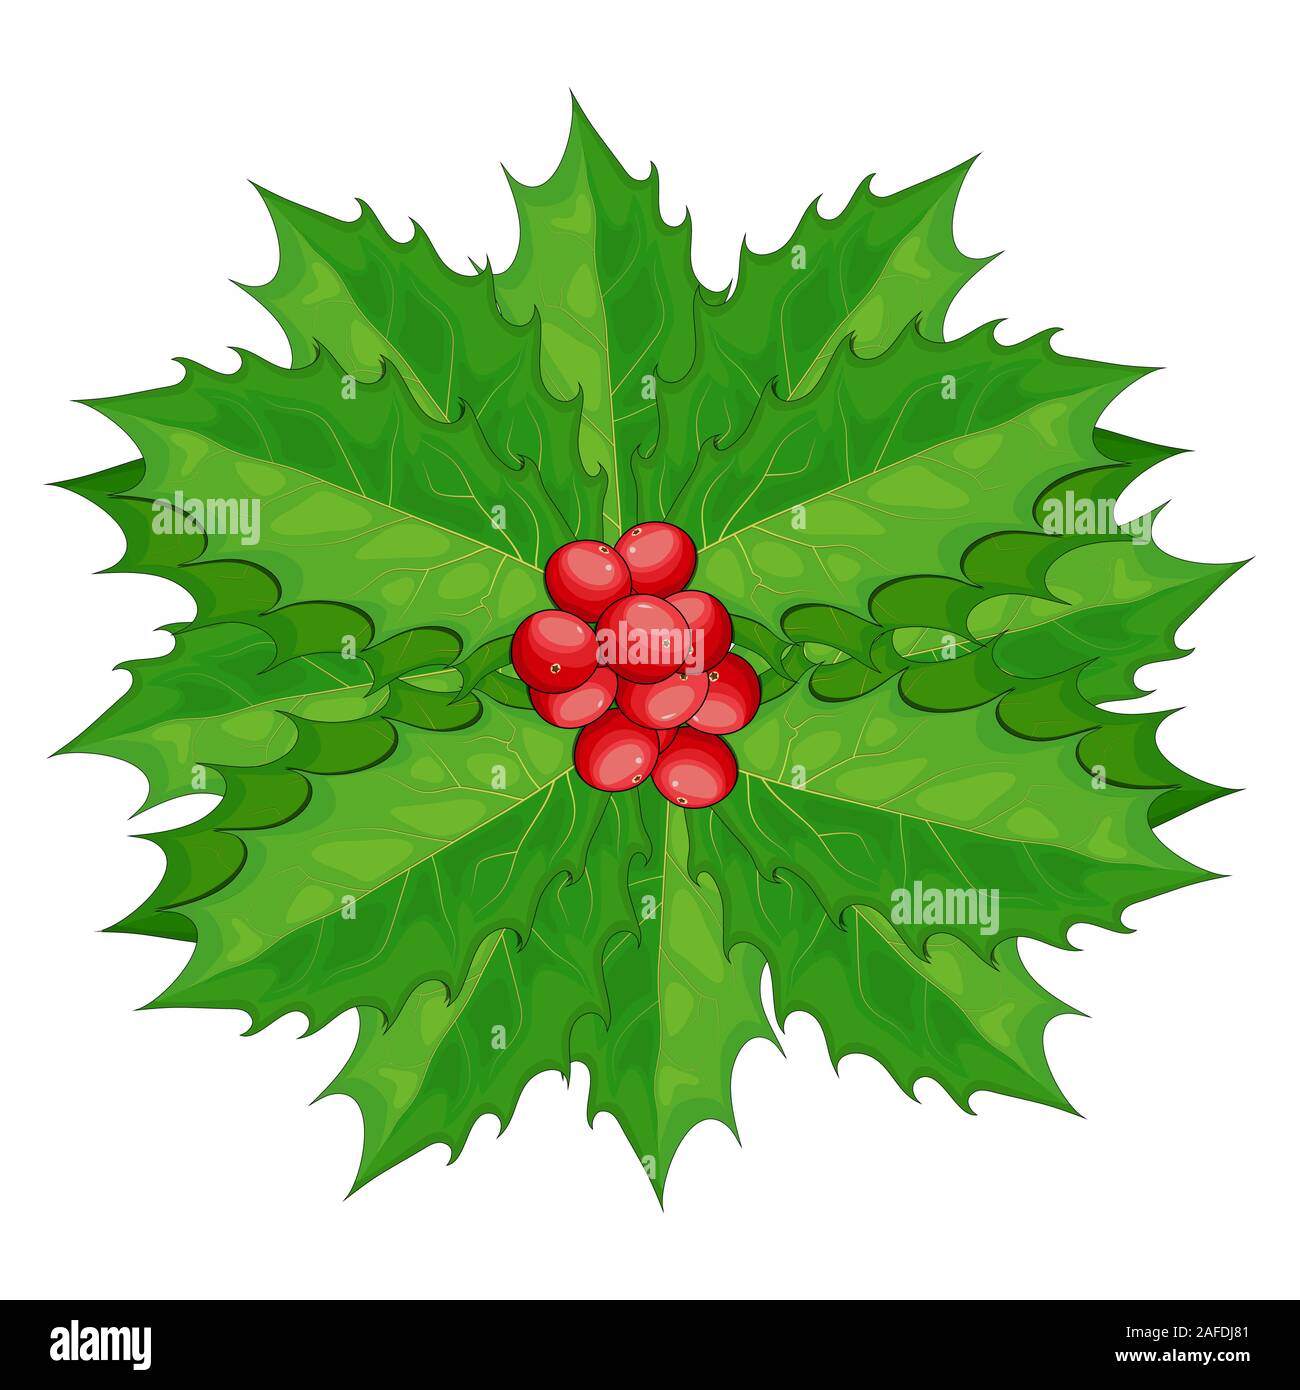 Stechpalme Beeren mit grünen Blättern Vektor-illustration isoliert auf einem weißen Hintergrund. Ilex Beeren. Auf Zweig mit Blatt. Twig von Weihnachten Mistel bunc Stock Vektor